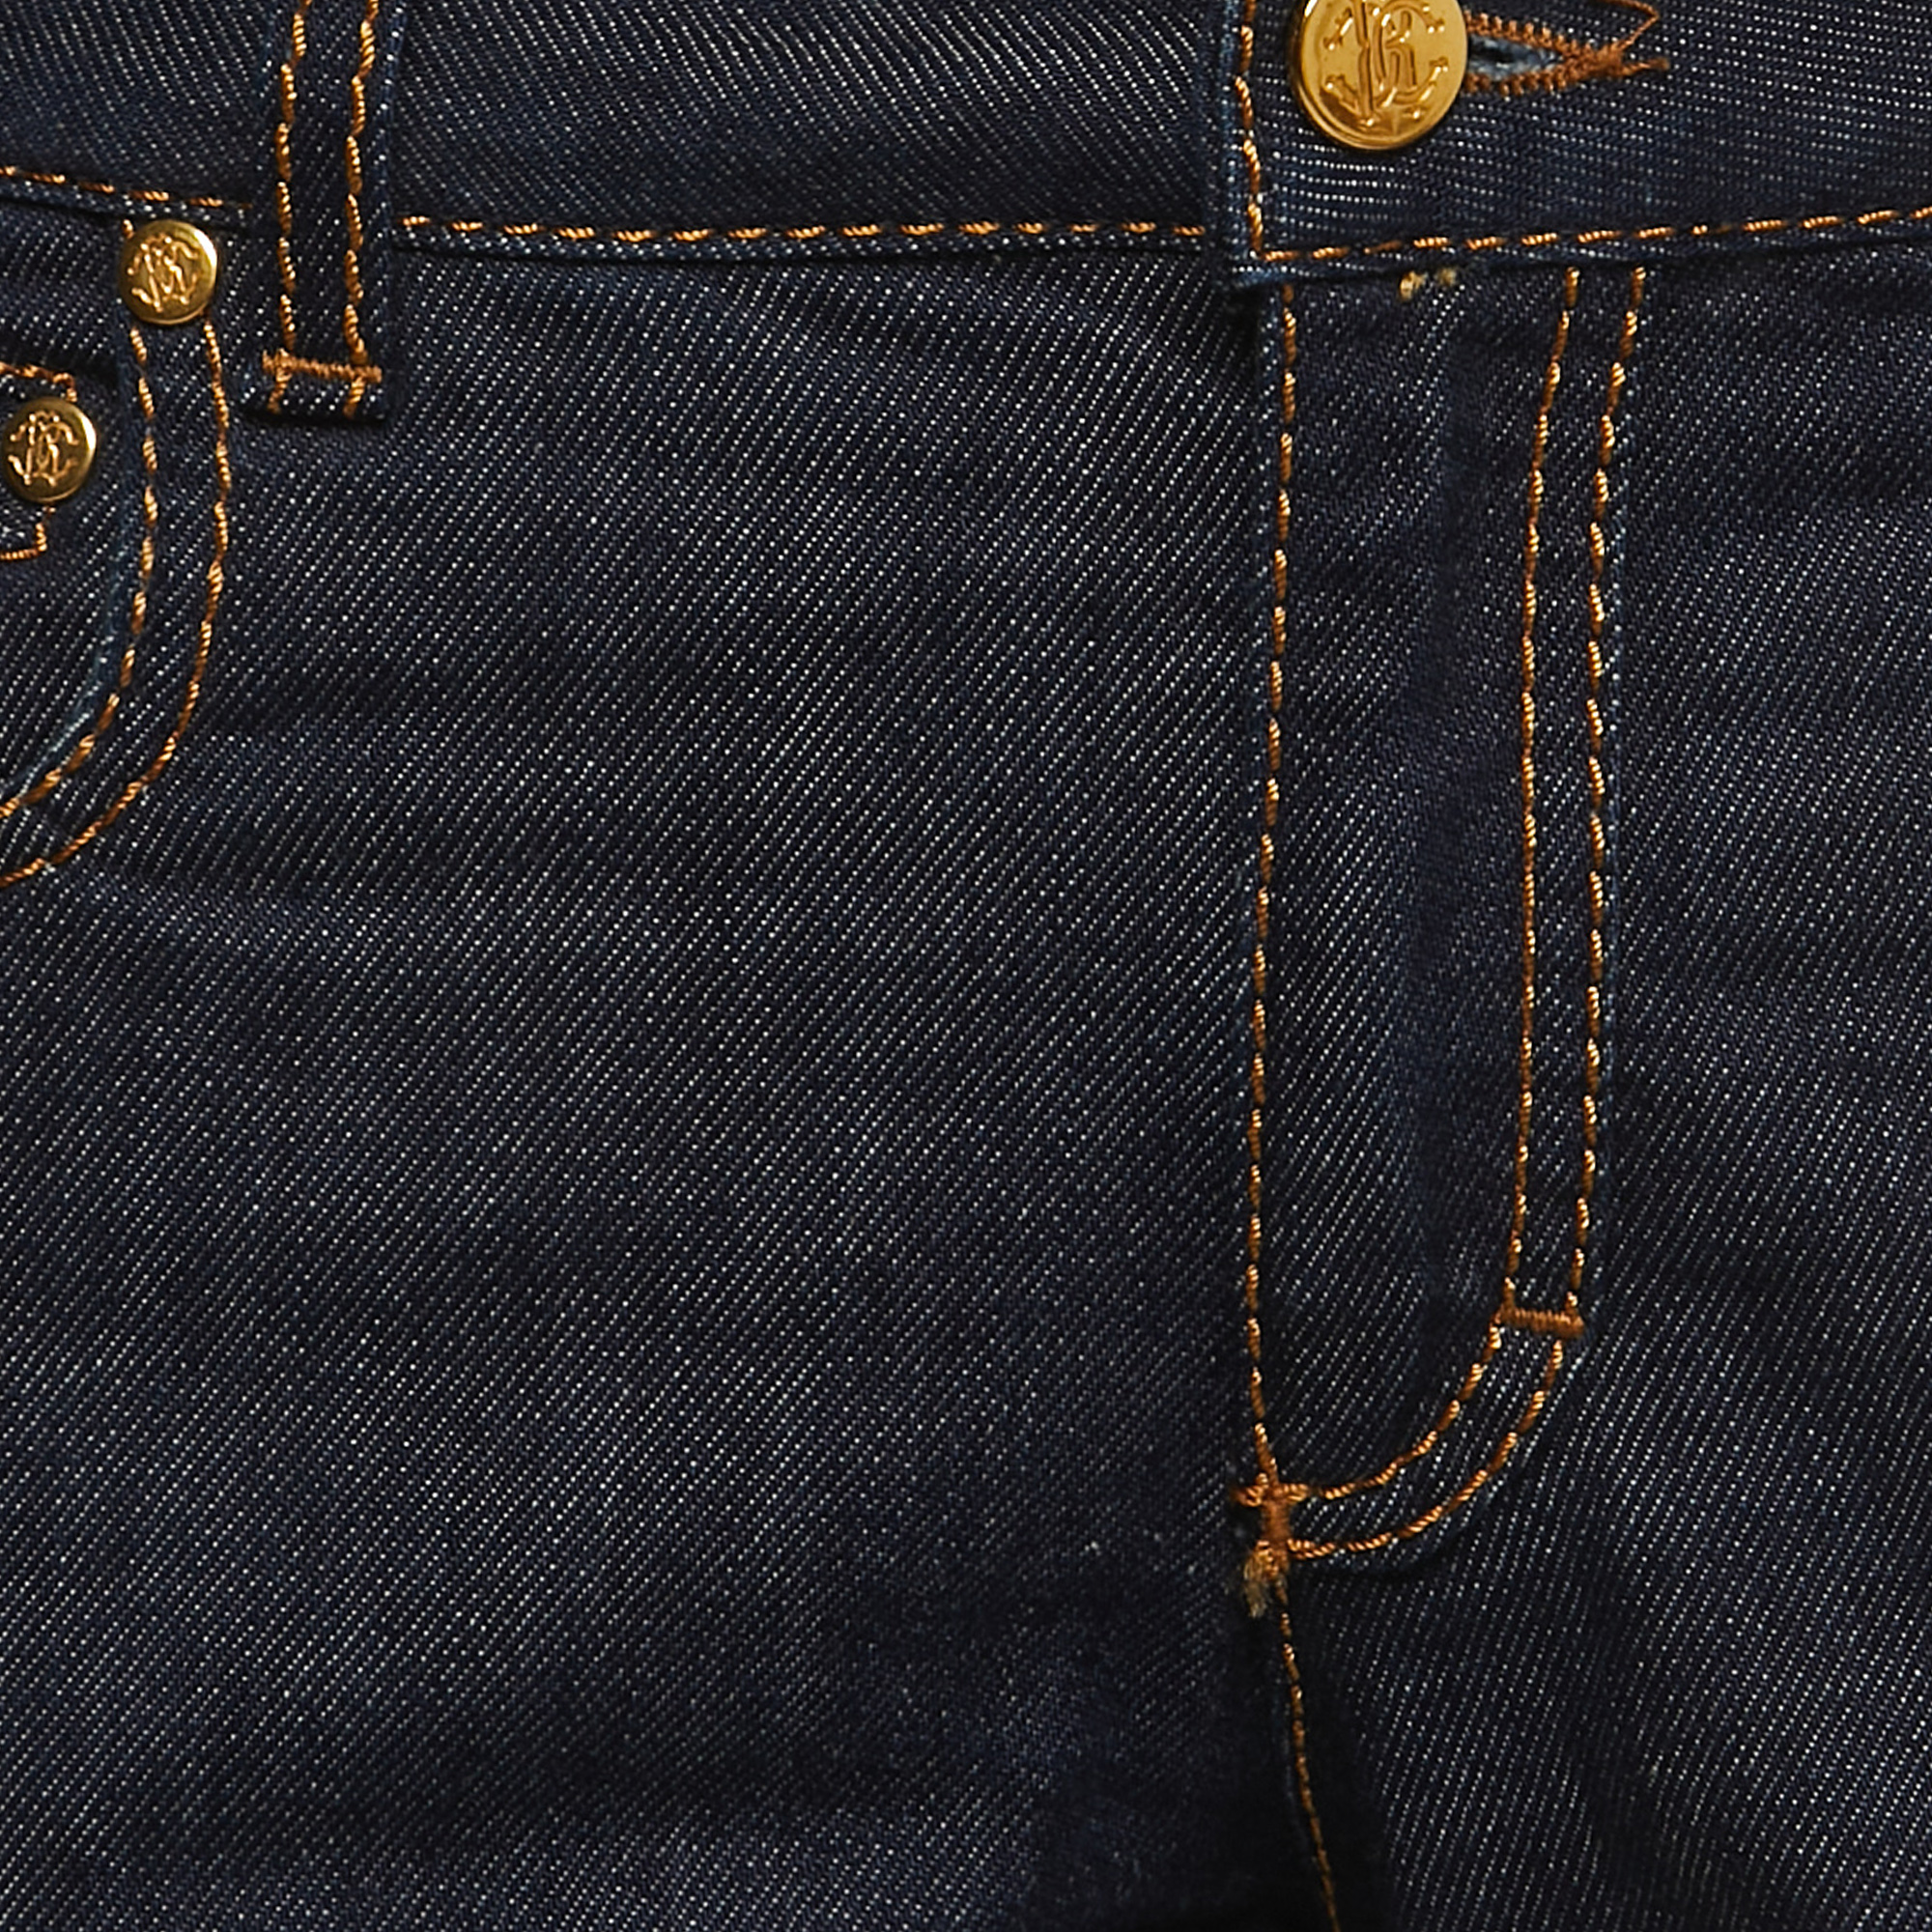 Roberto Cavalli Dark Blue Denim Flared Jeans M Waist 32